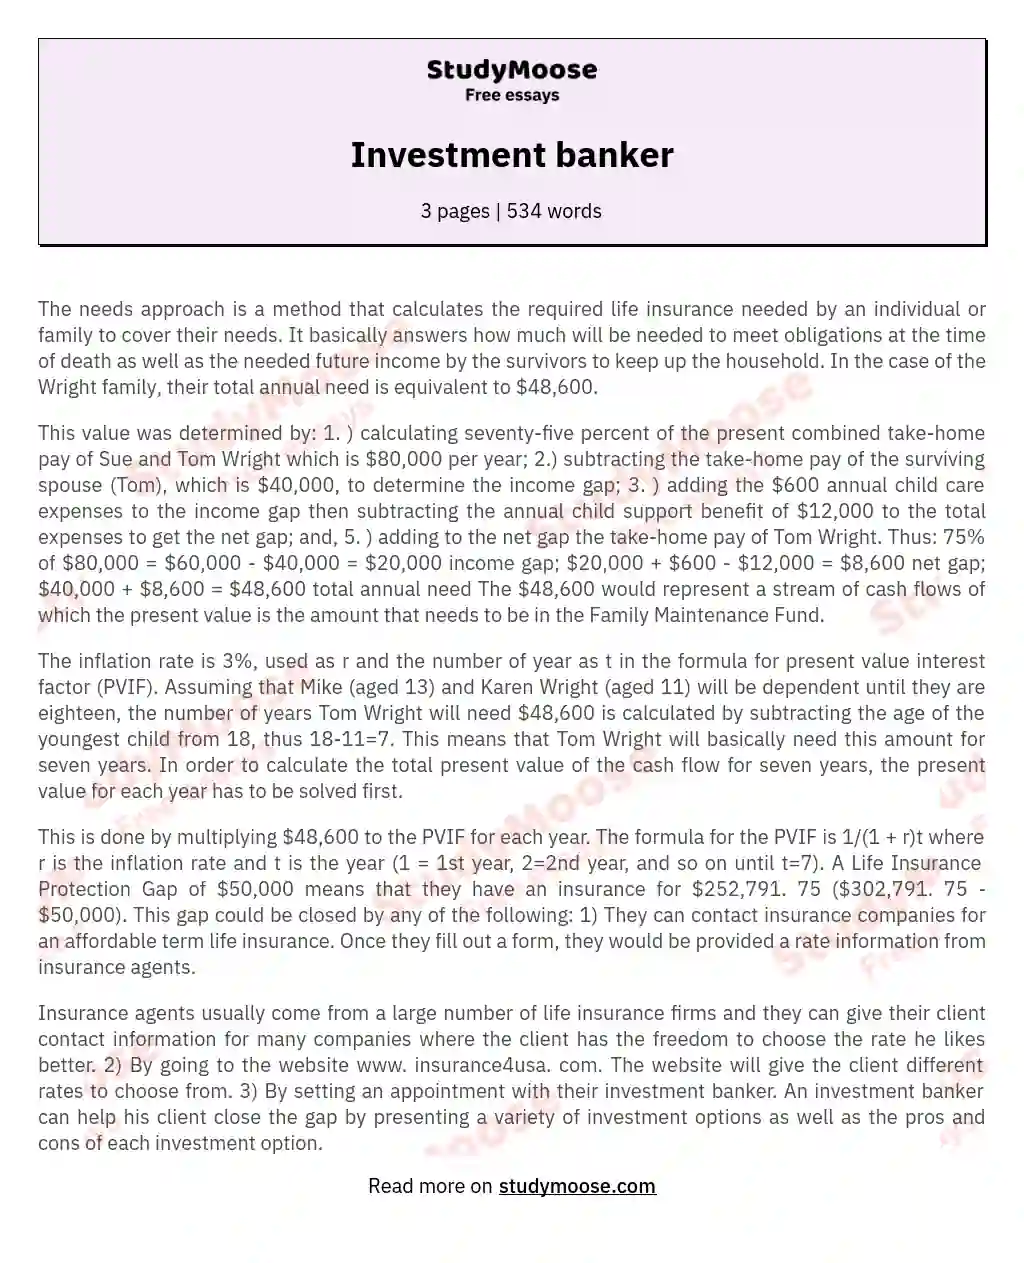 Investment banker essay